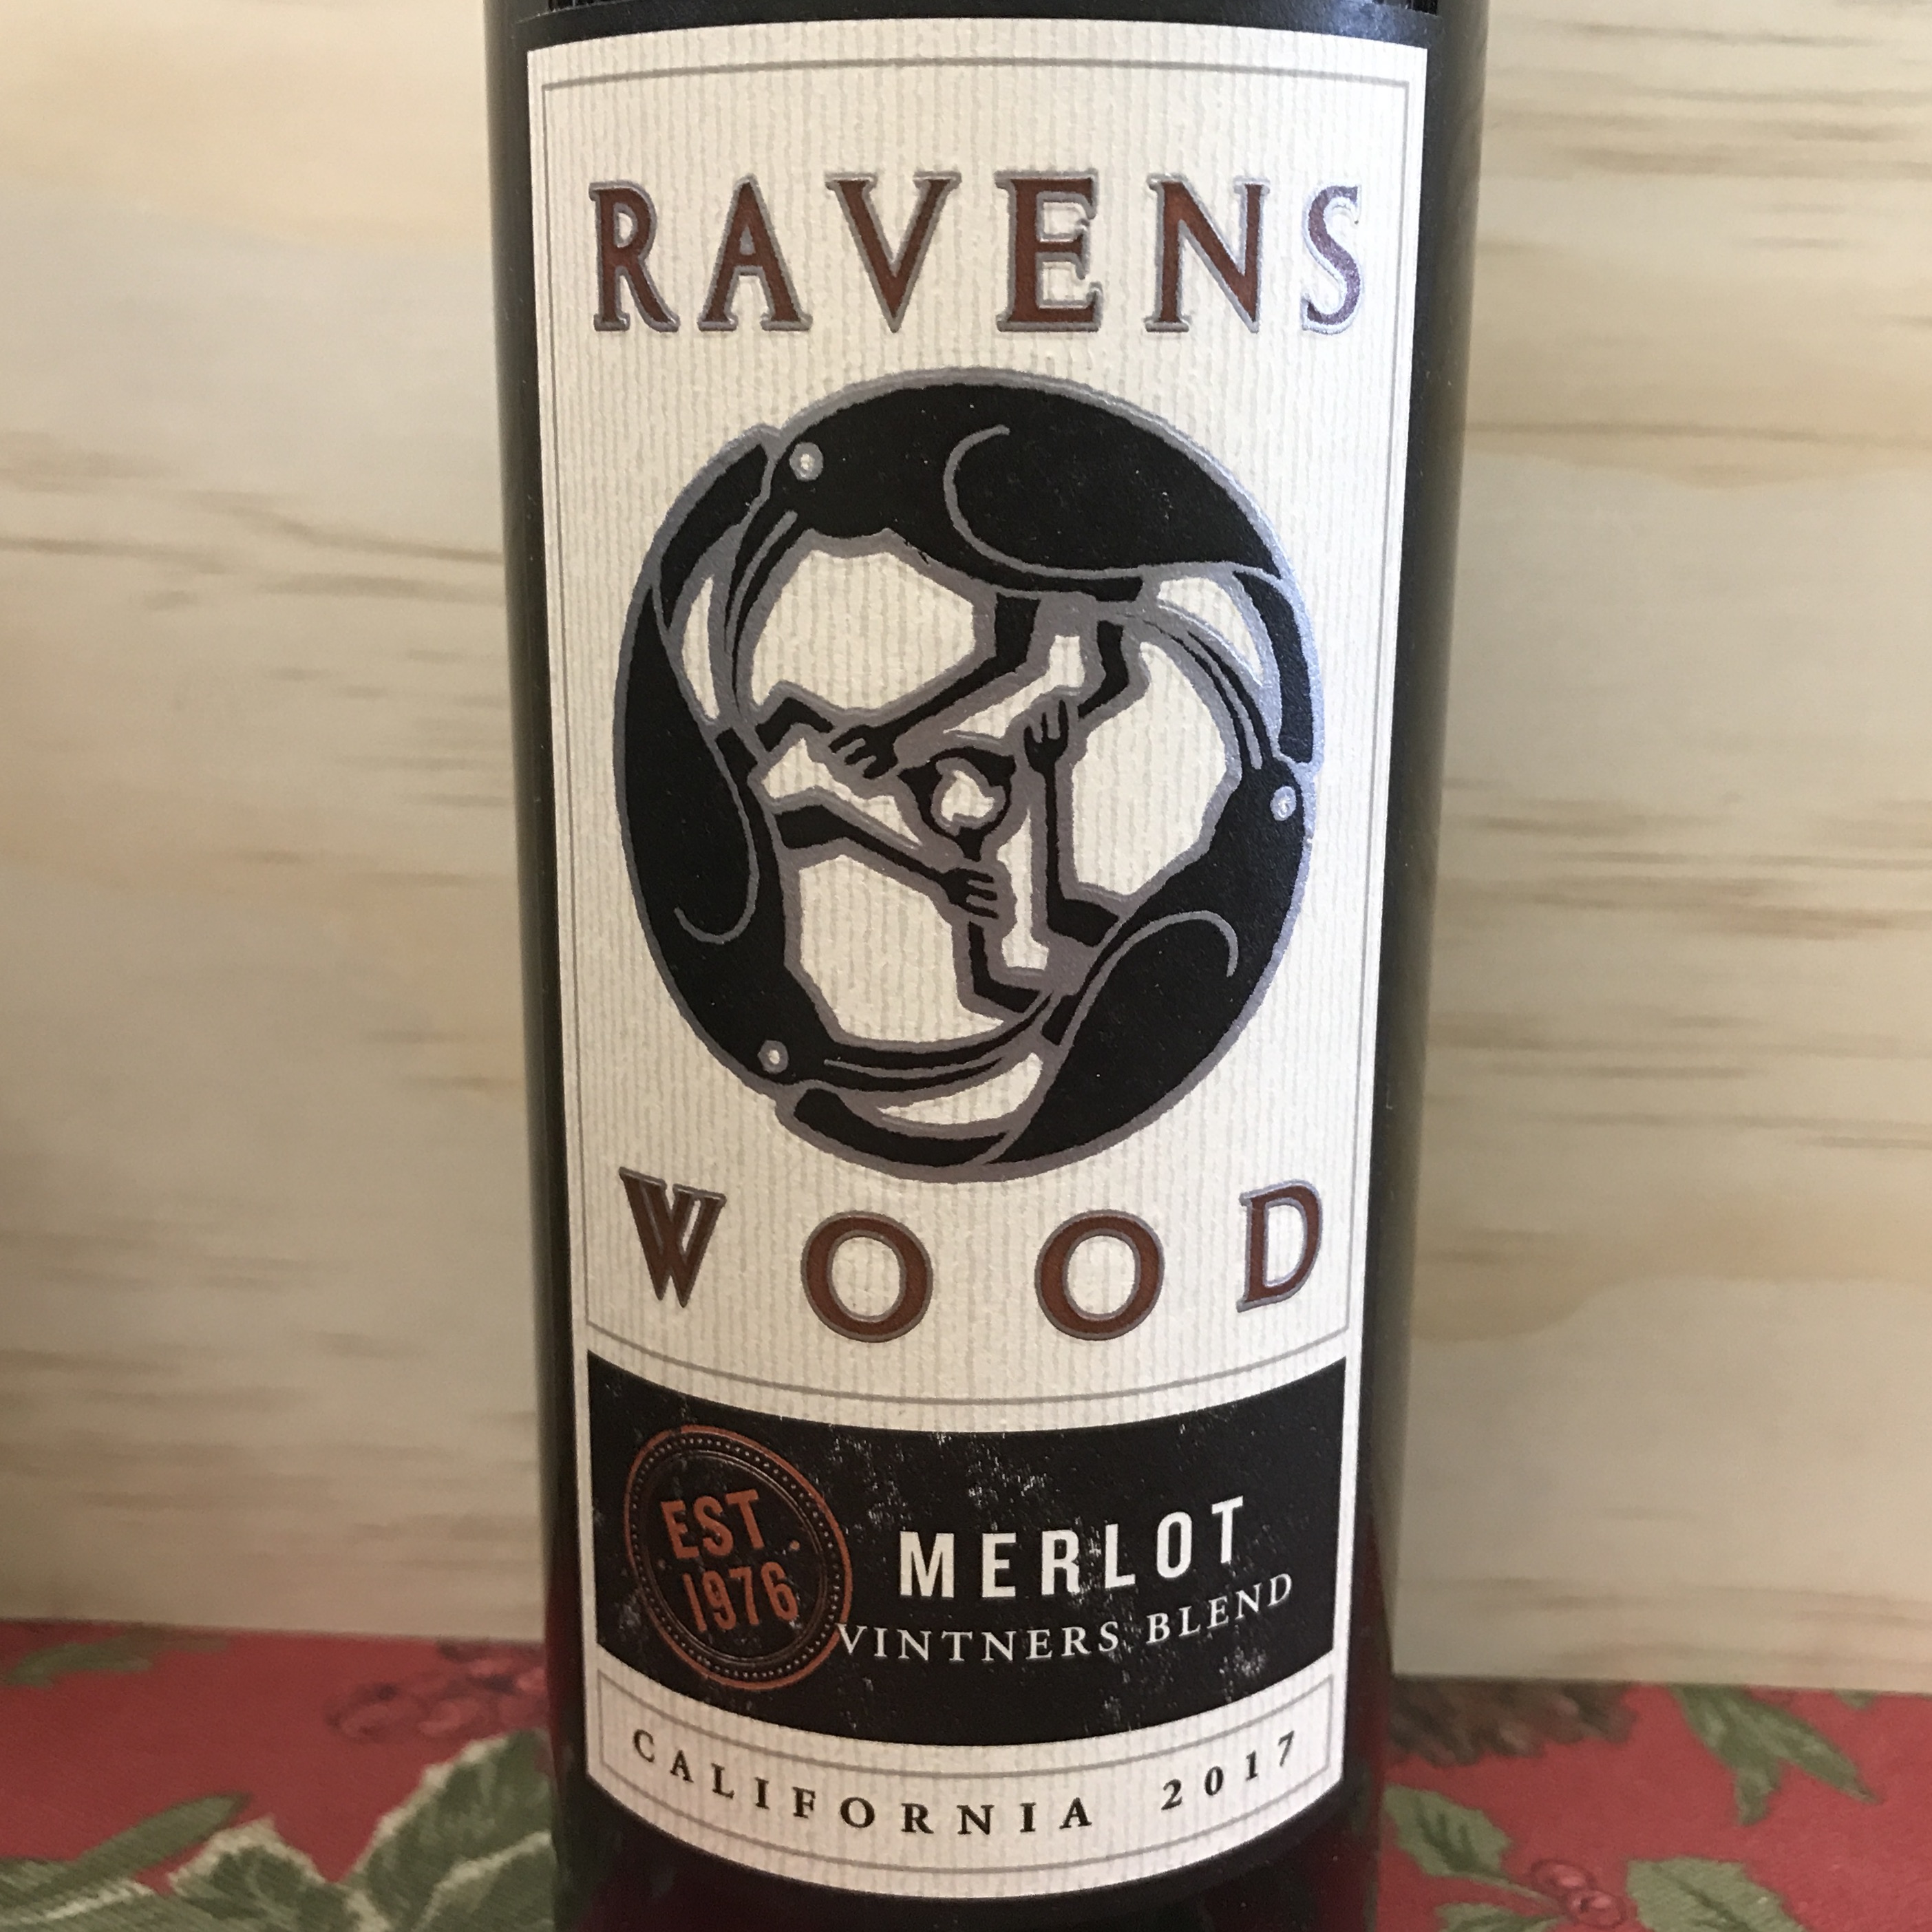 Ravenswood Vintners Blend Merlot California 2017